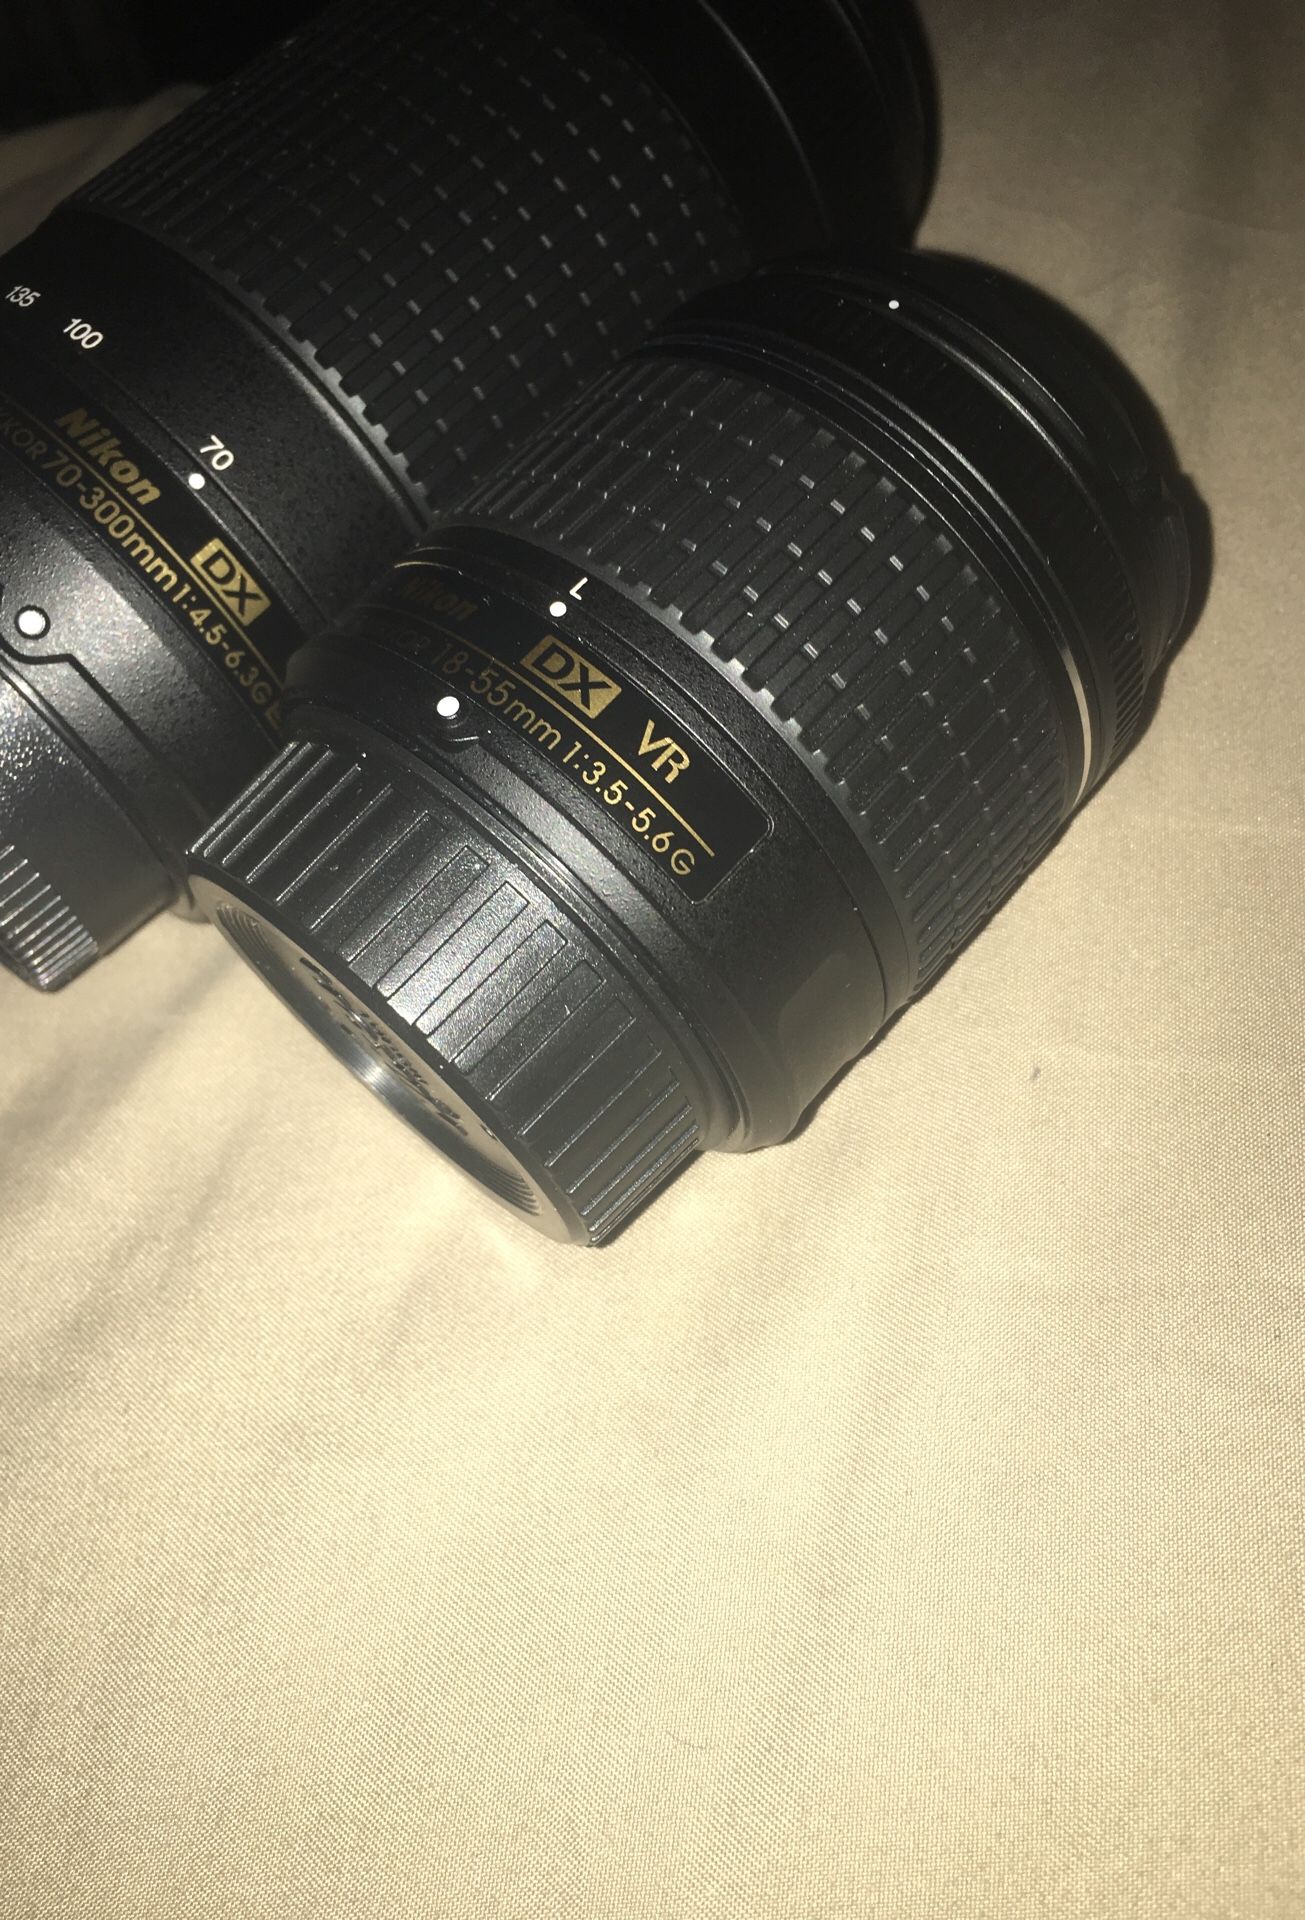 Nikon AF-P lenses 18-55mm VR & 70-300mm nikkor lens set